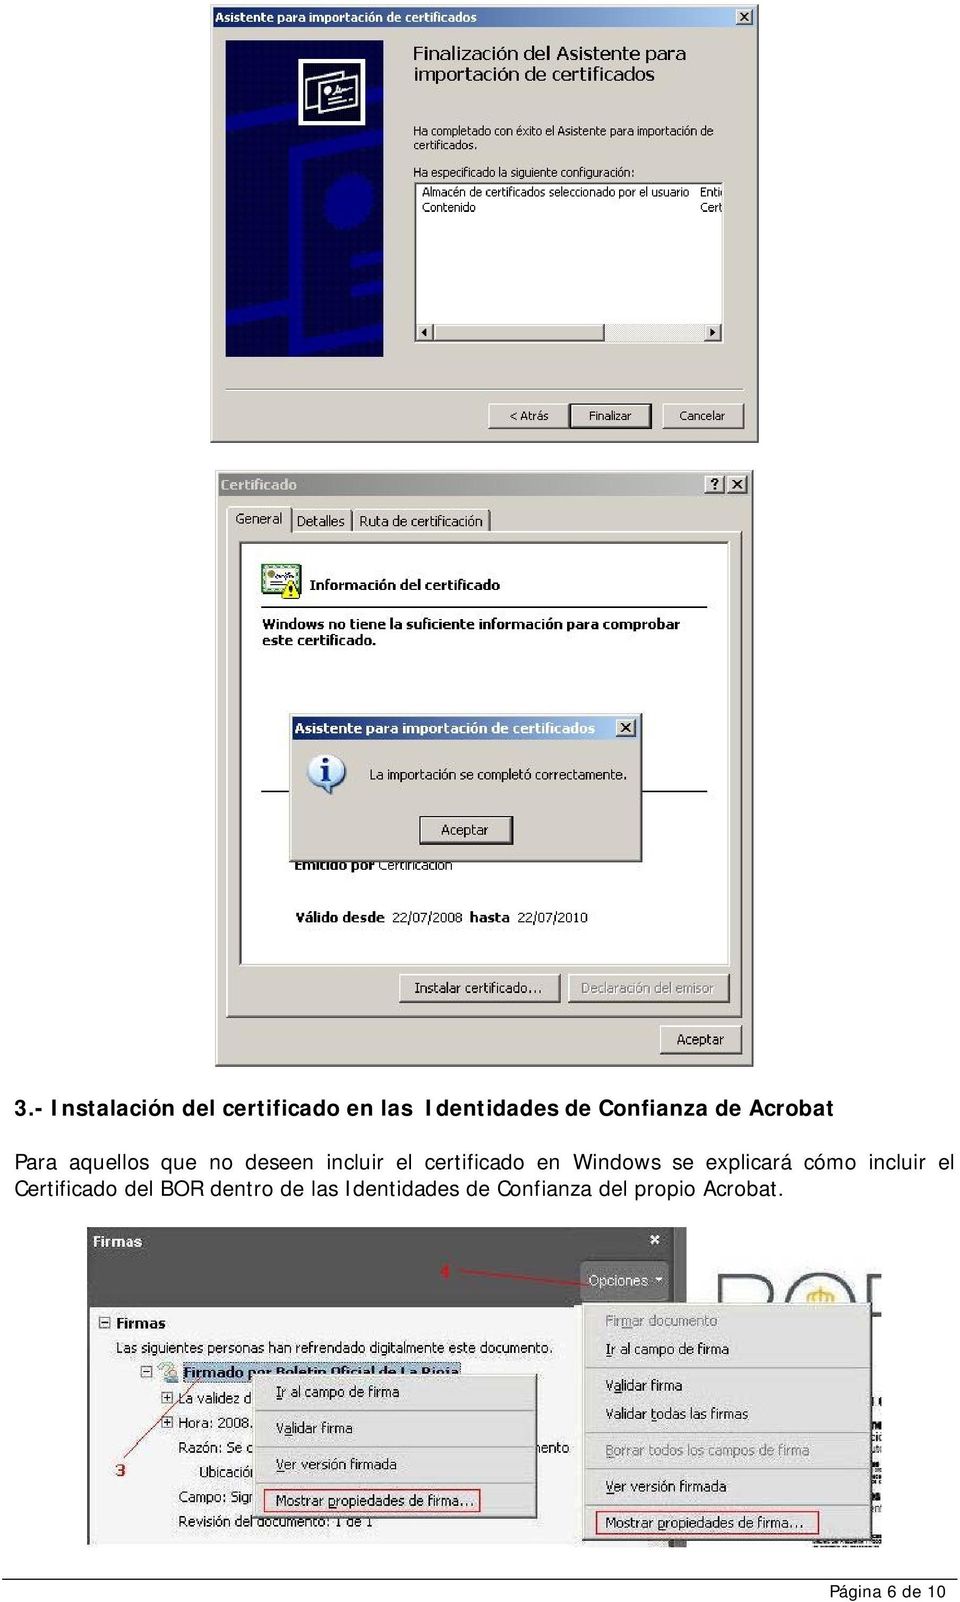 Windows se explicará cómo incluir el Certificado del BOR dentro